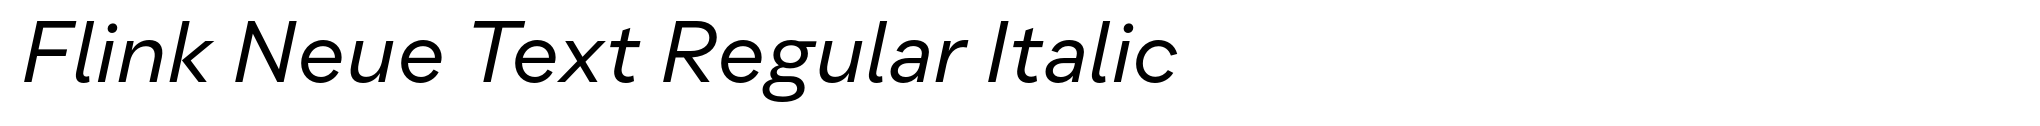 Flink Neue Text Regular Italic image